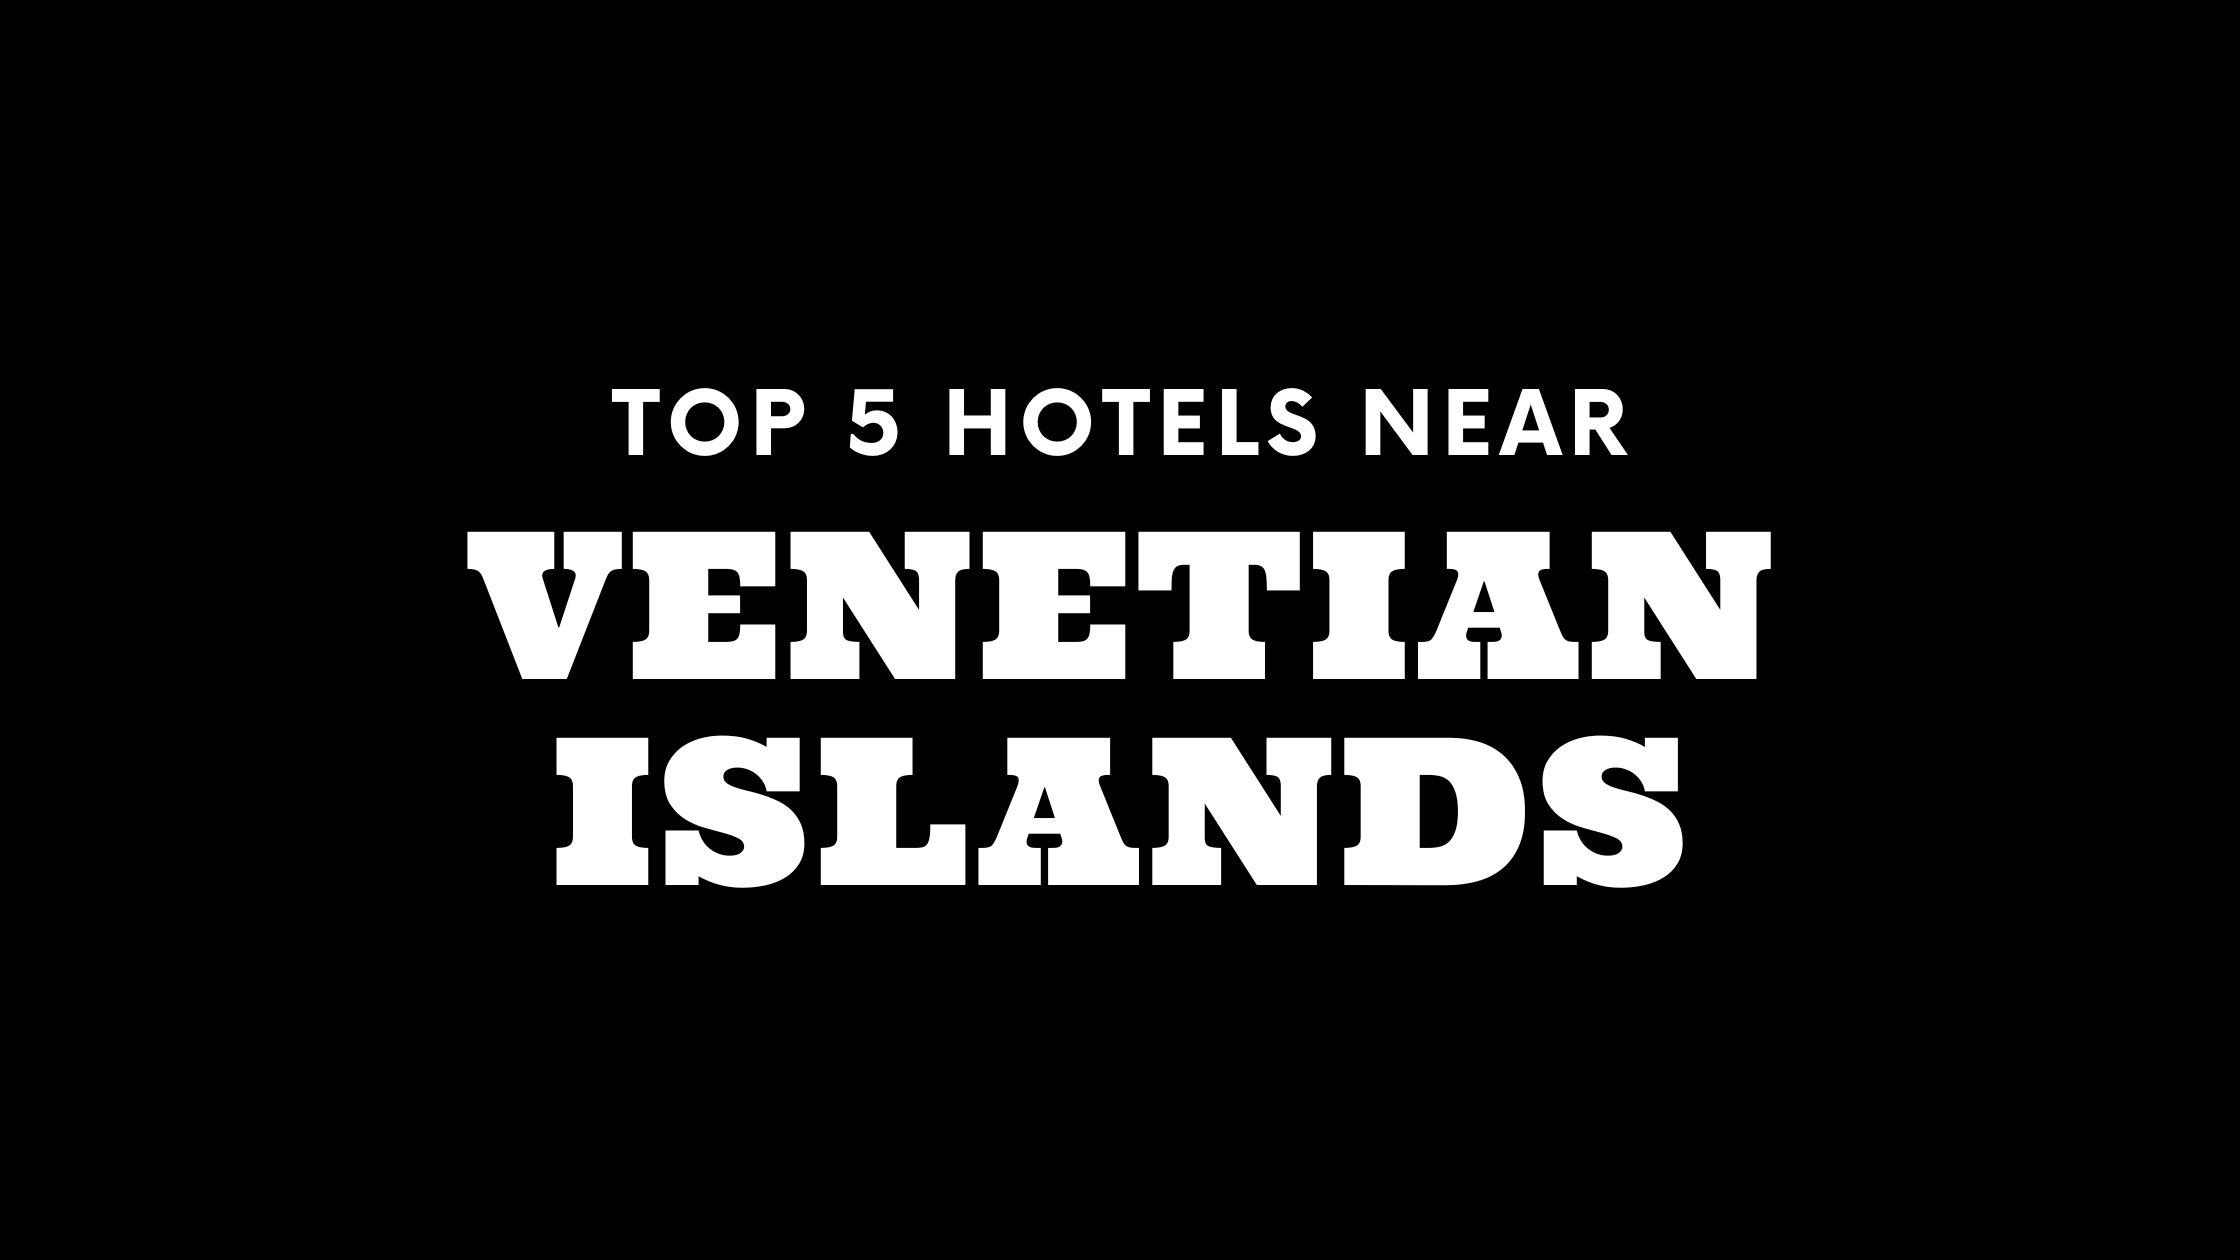 Top 5 Hotels Near Venetian Islands